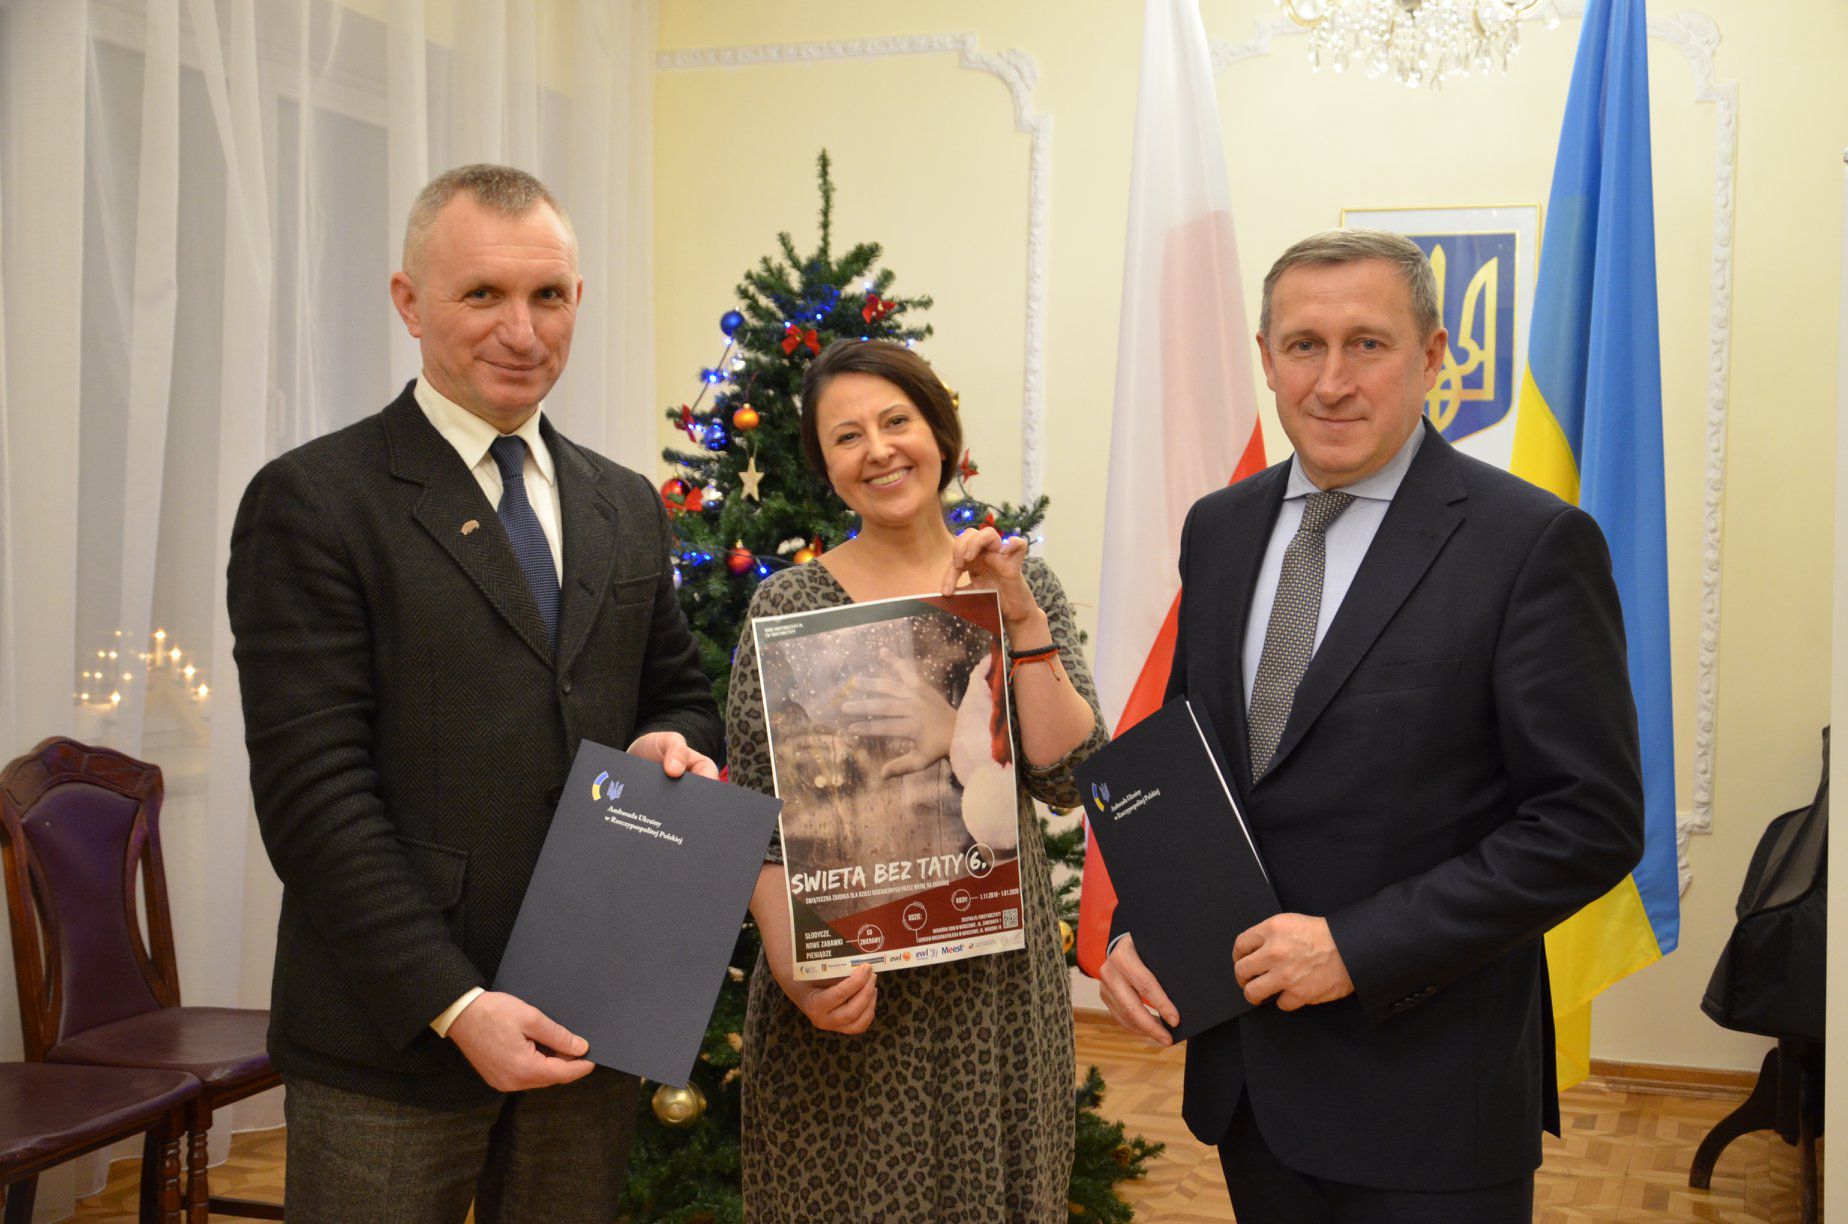 Посольство України підтримає ініціативу «Свята без тата»